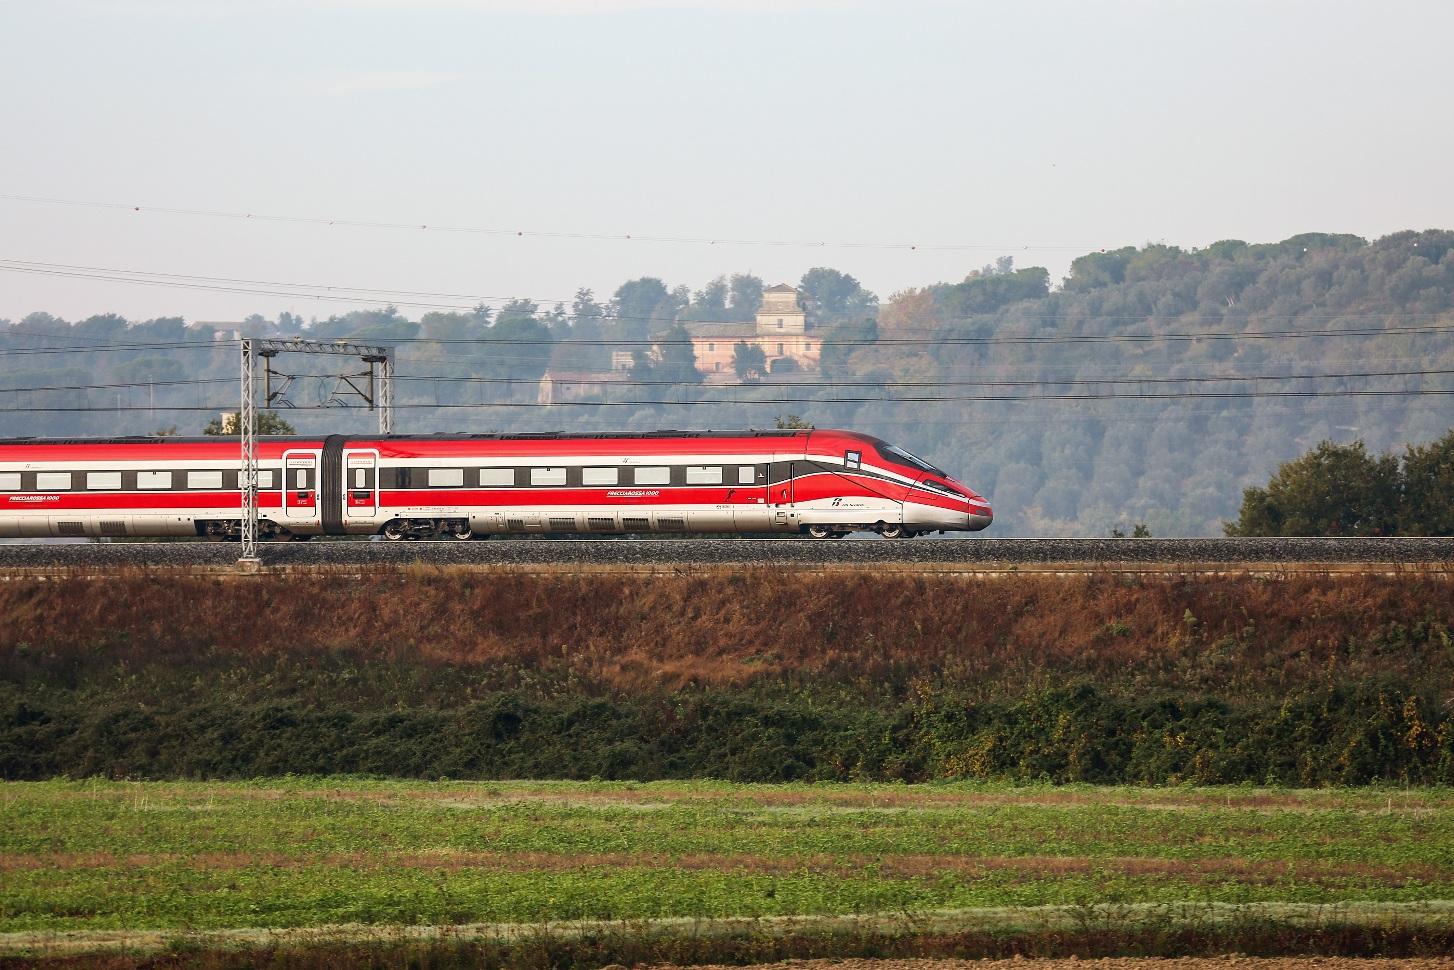 Caos treni oggi per un guasto sull’Alta Velocità Napoli Roma, ritardi di oltre un’ora e fermate soppresse